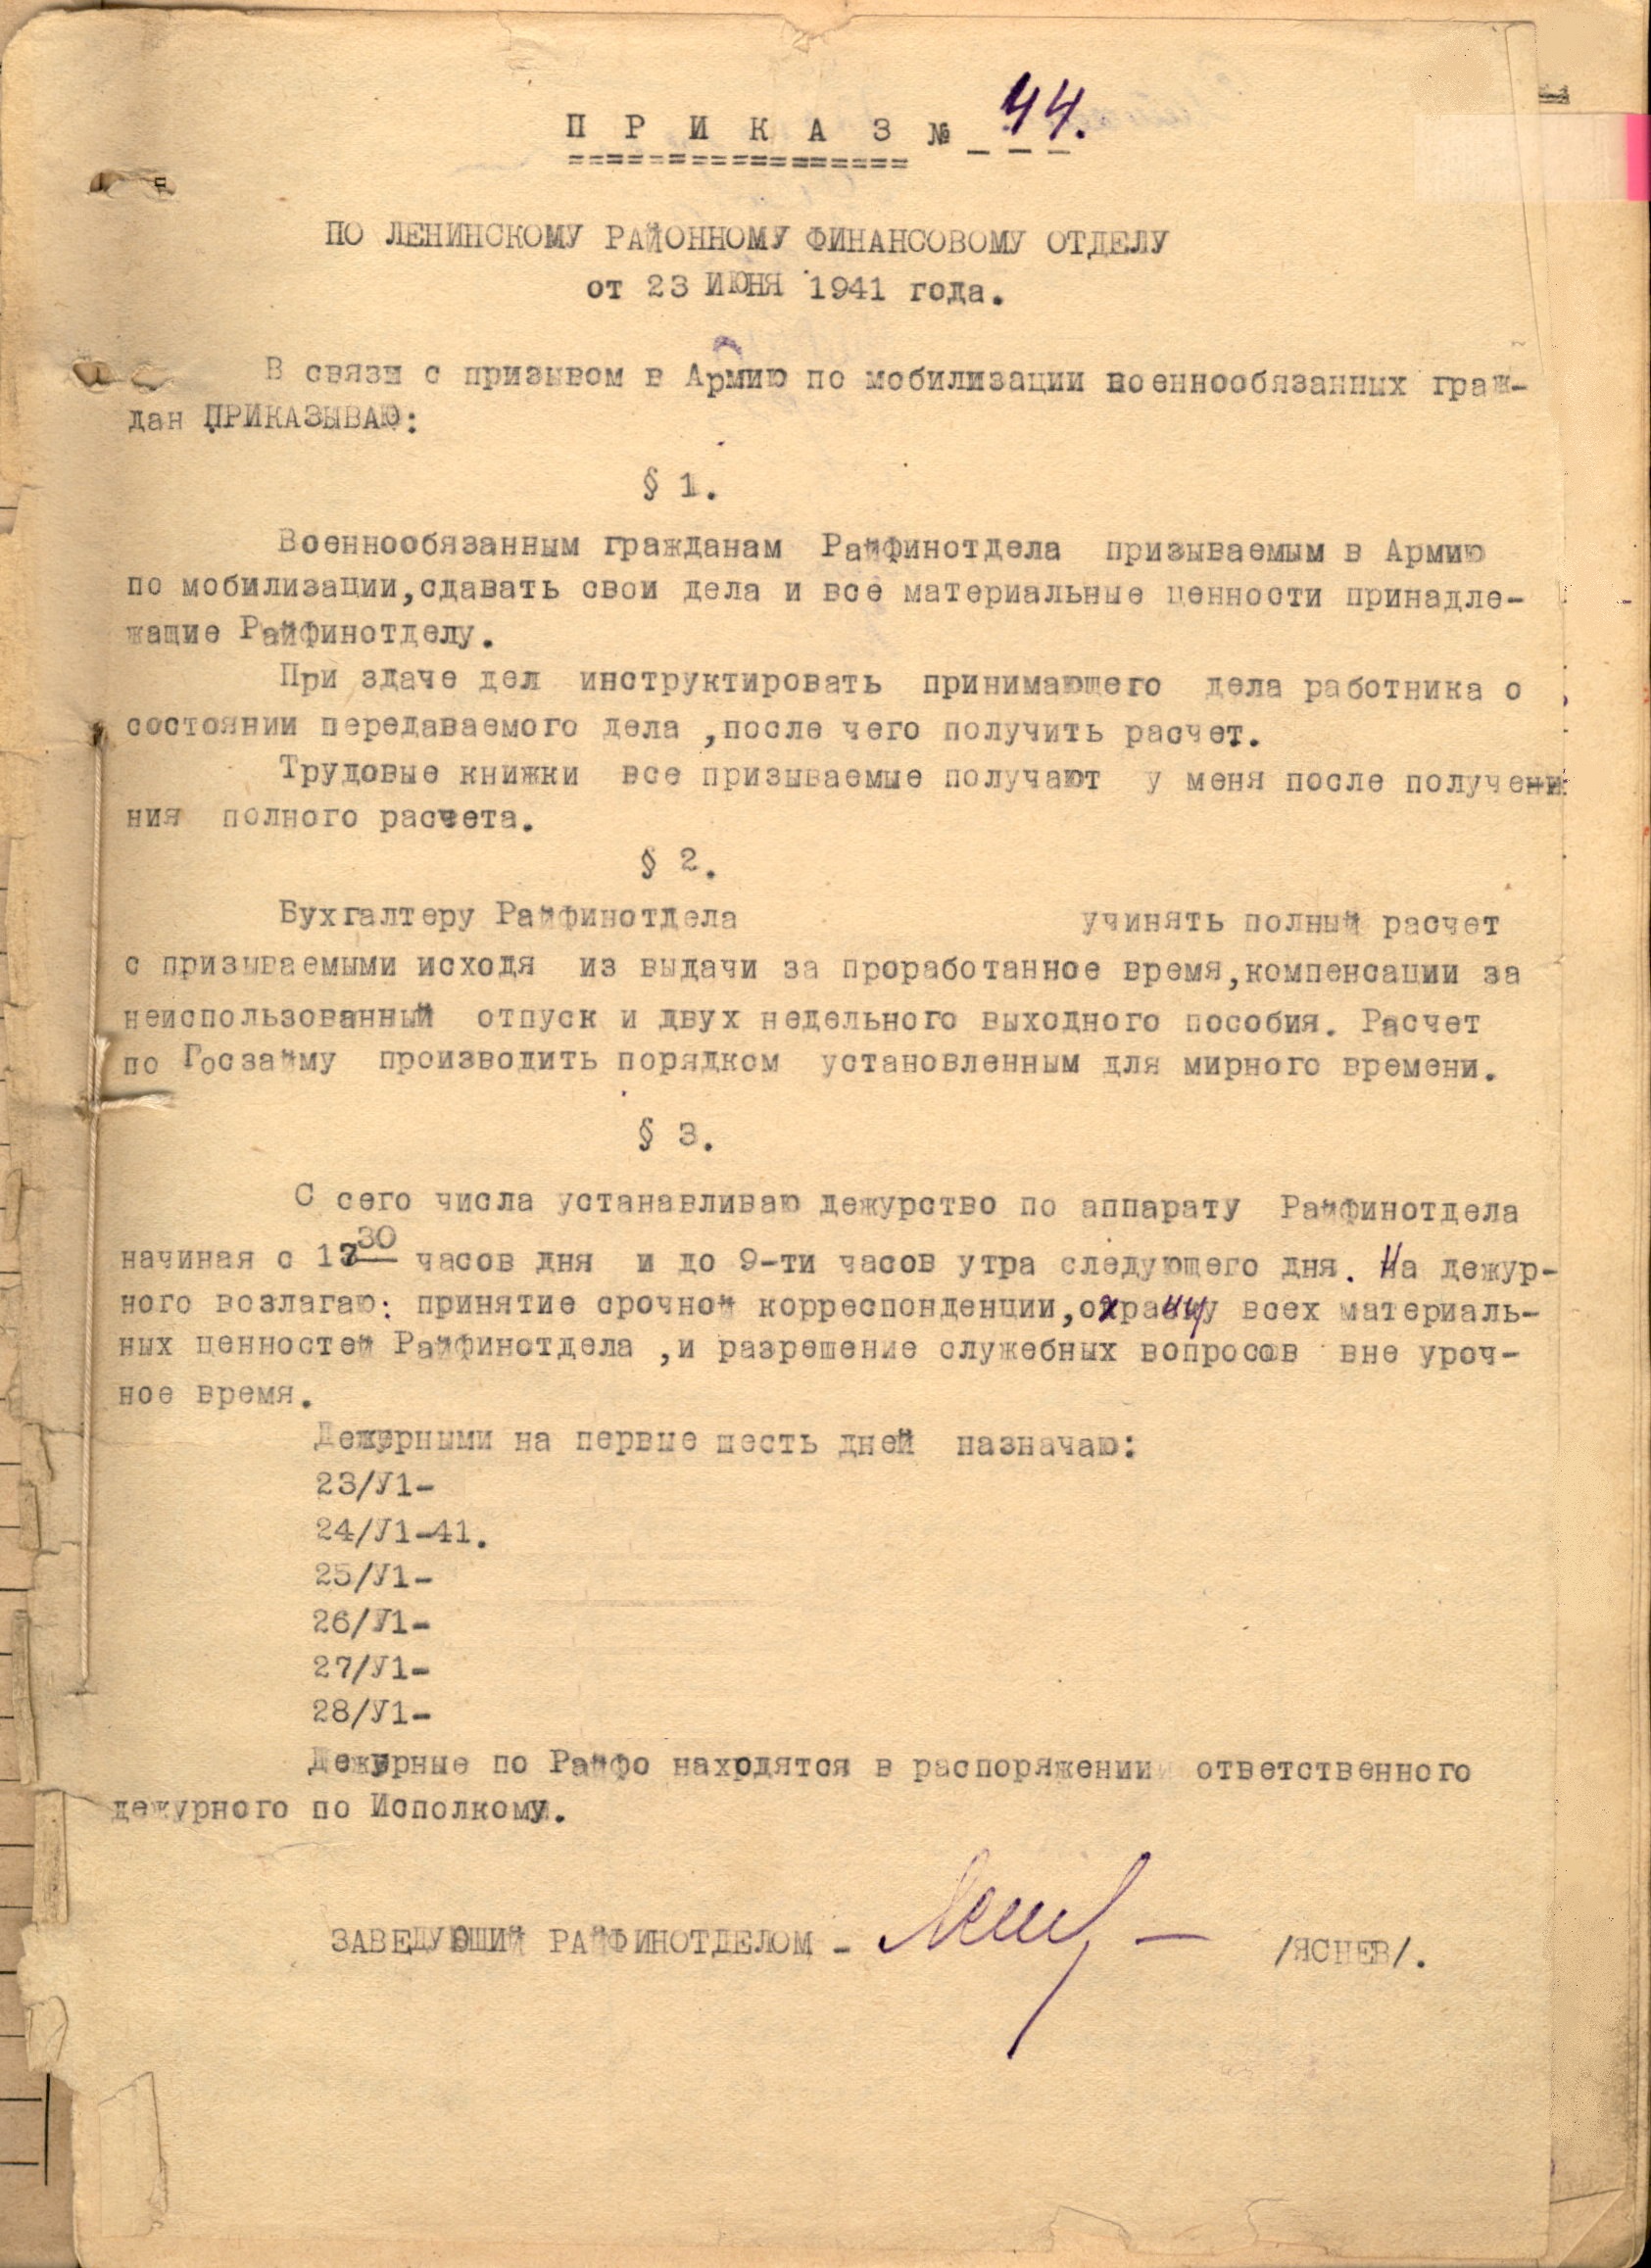 Муниципальный архив г. Иваново. Ф.26, оп.1/2, д.3, л.21.